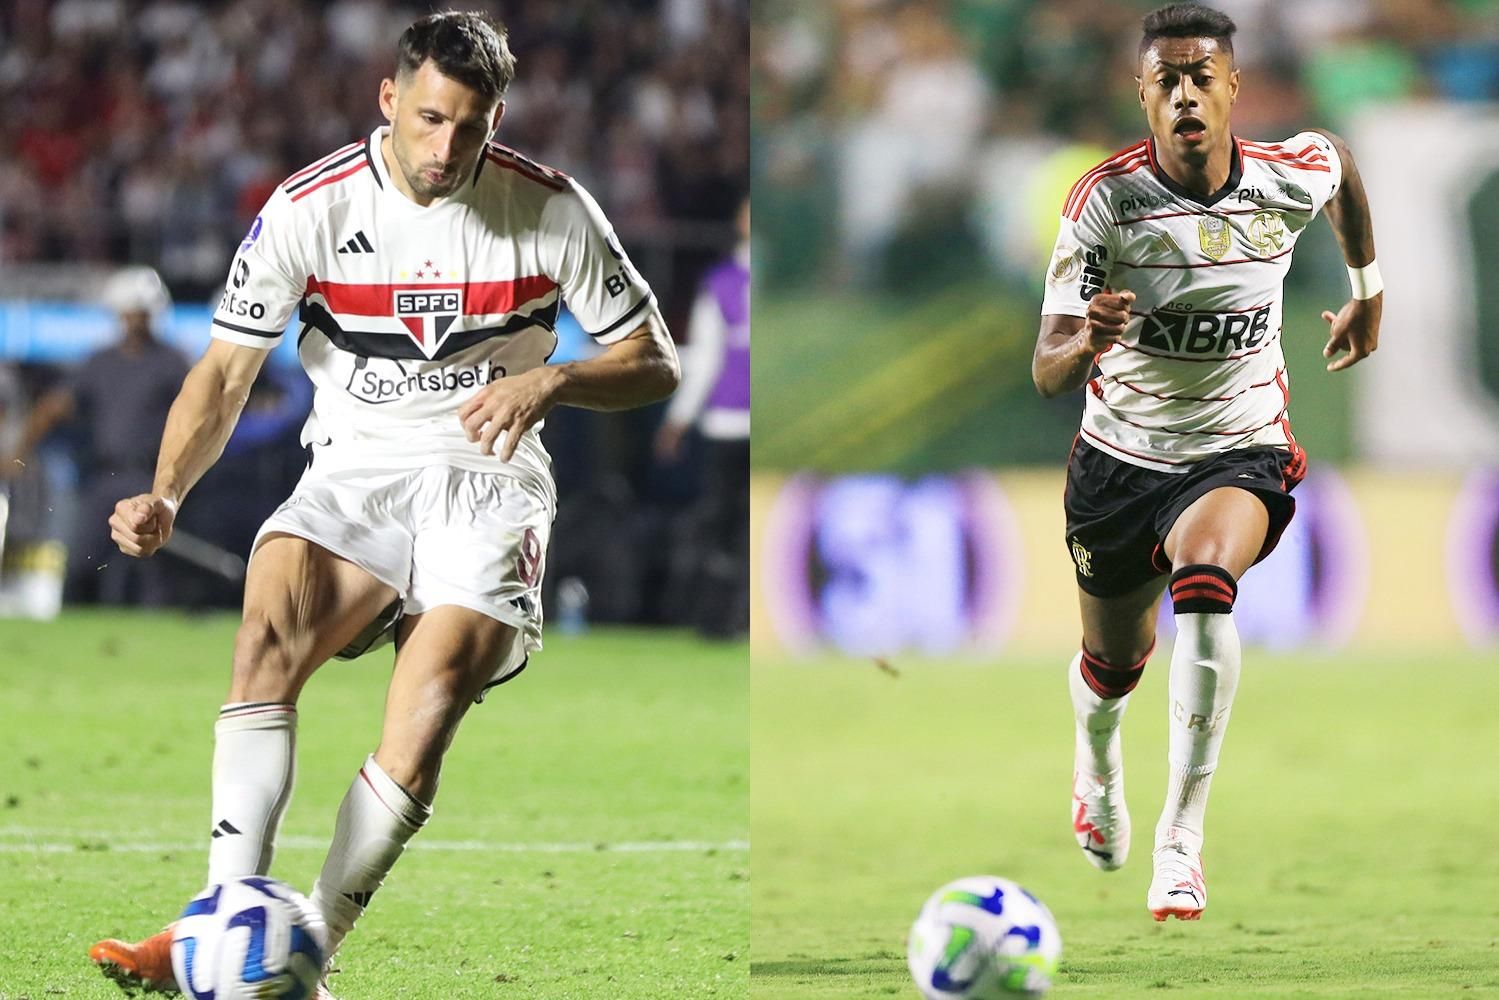 São Paulo x Flamengo: onde assistir, escalações e arbitragem